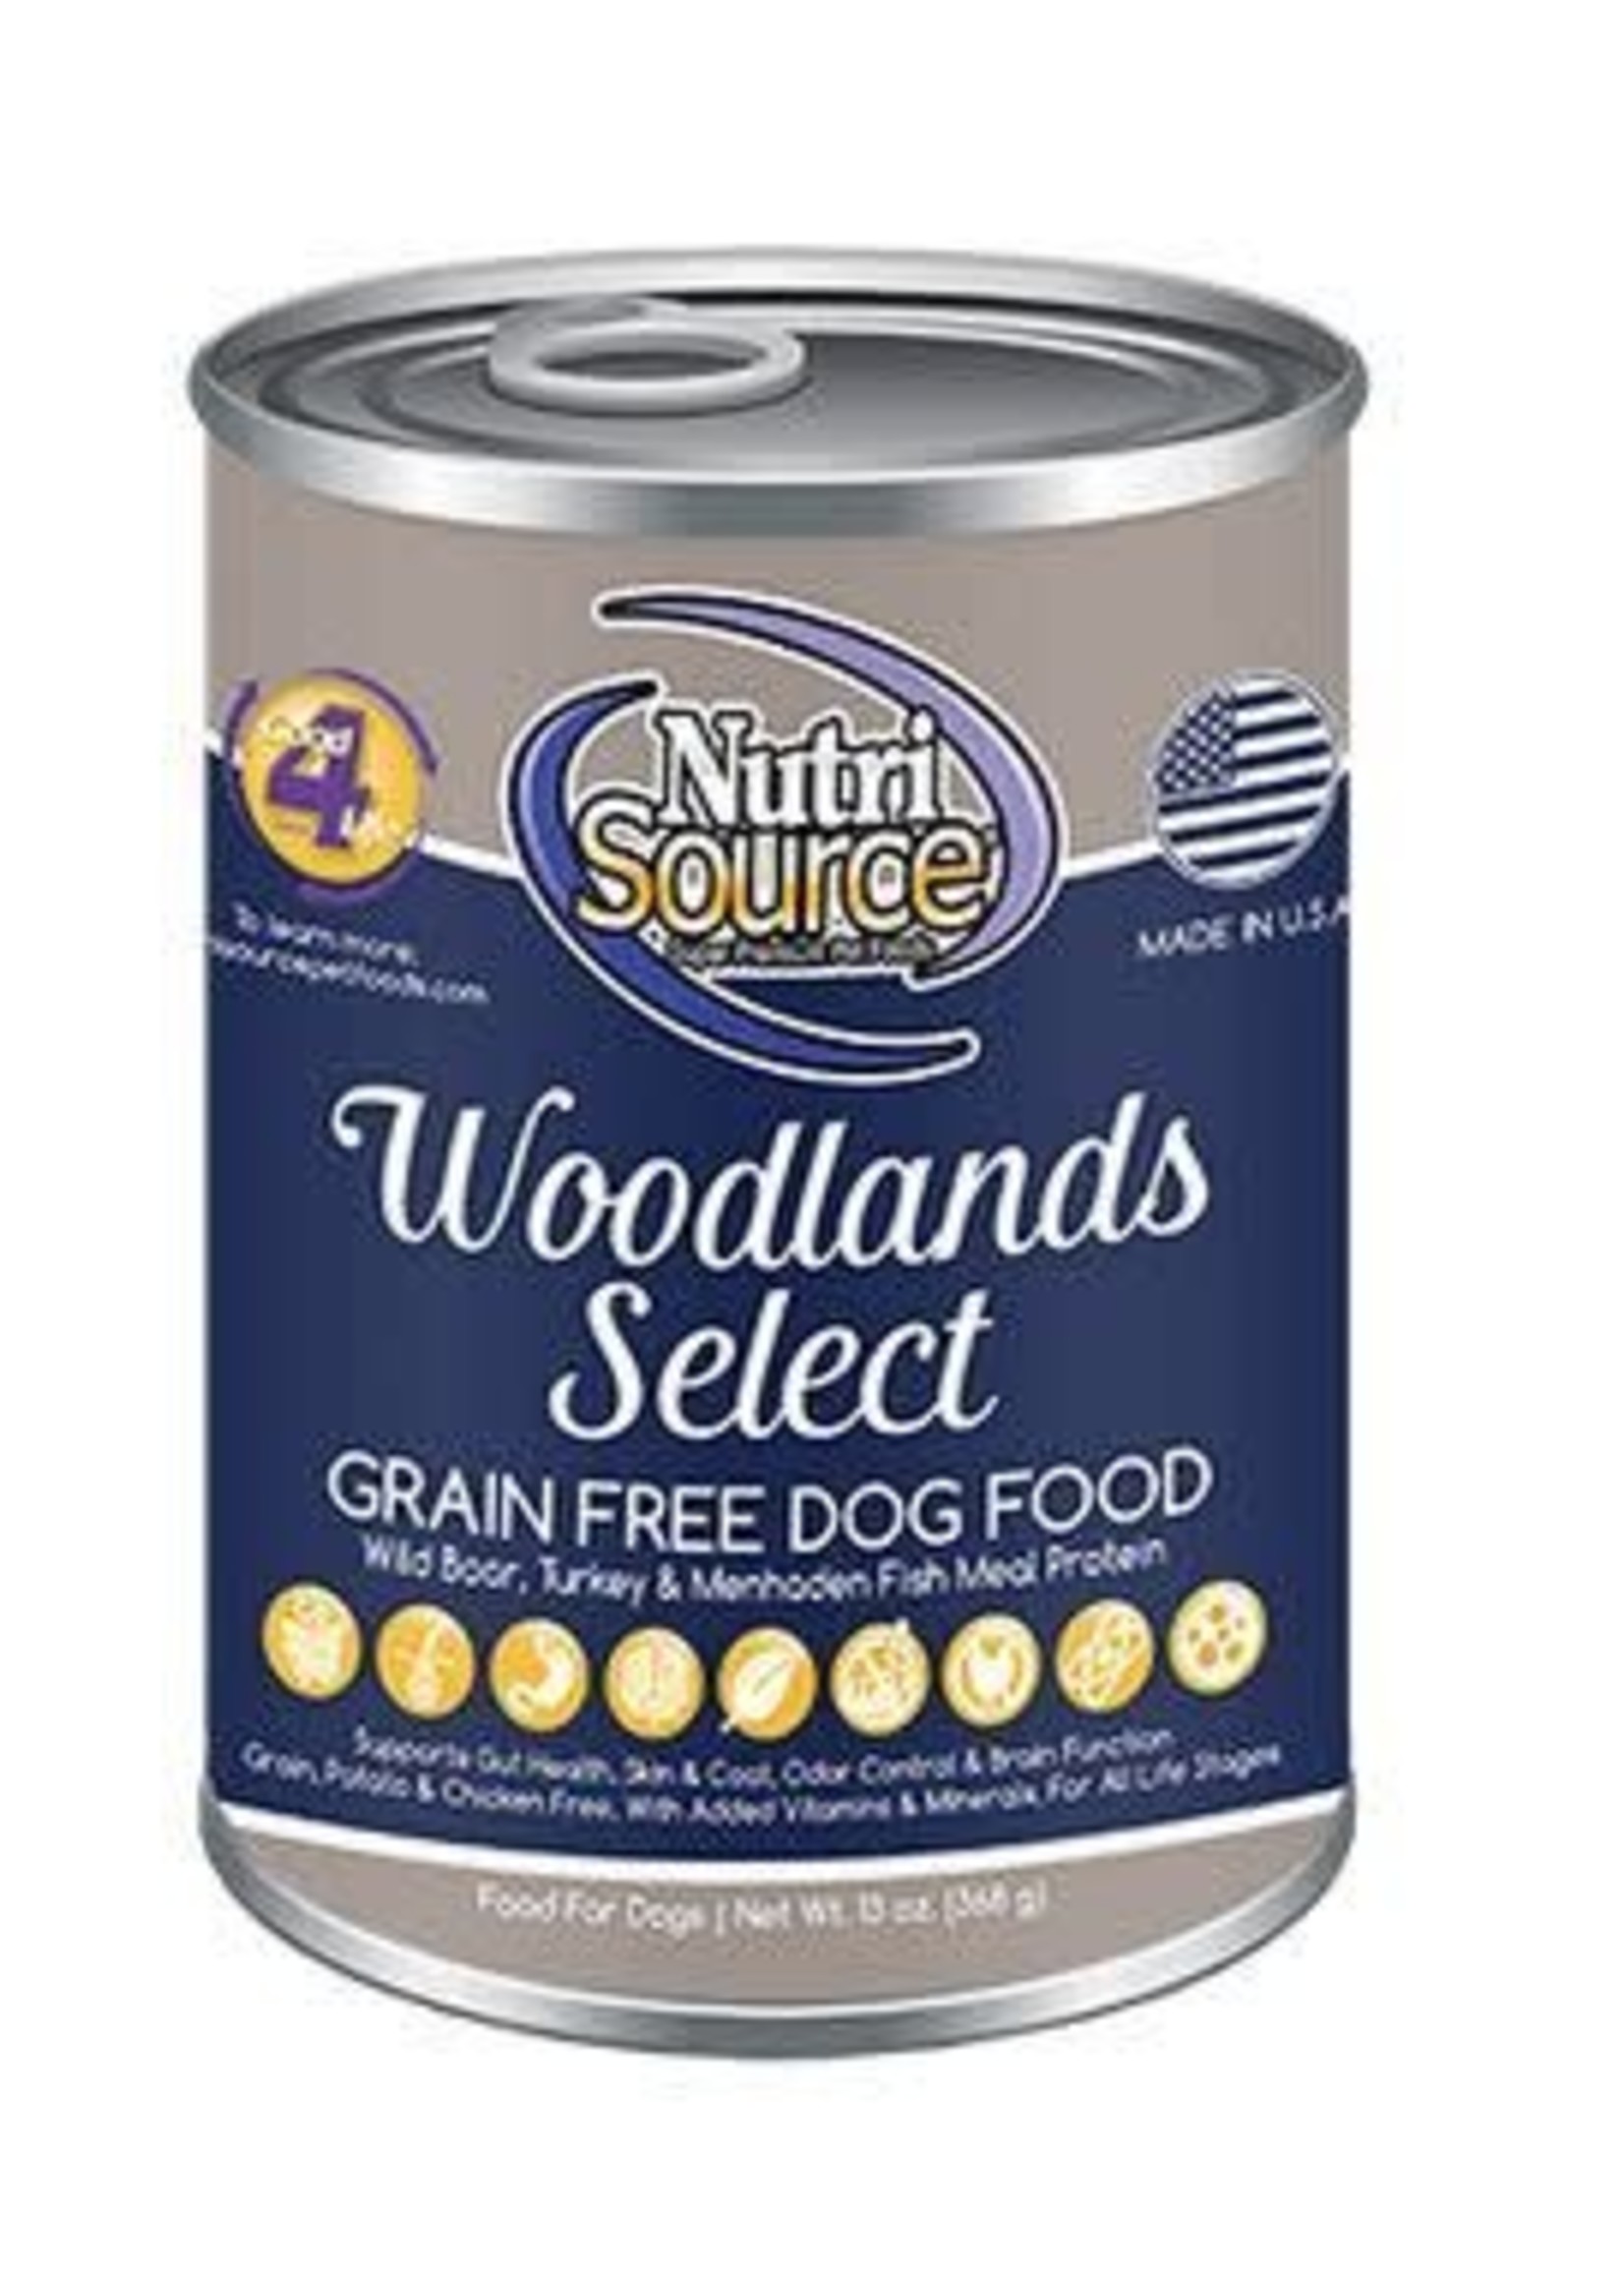 Nutrisource NutriSource Grain-Free Woodland Select Wet Dog Food 13oz